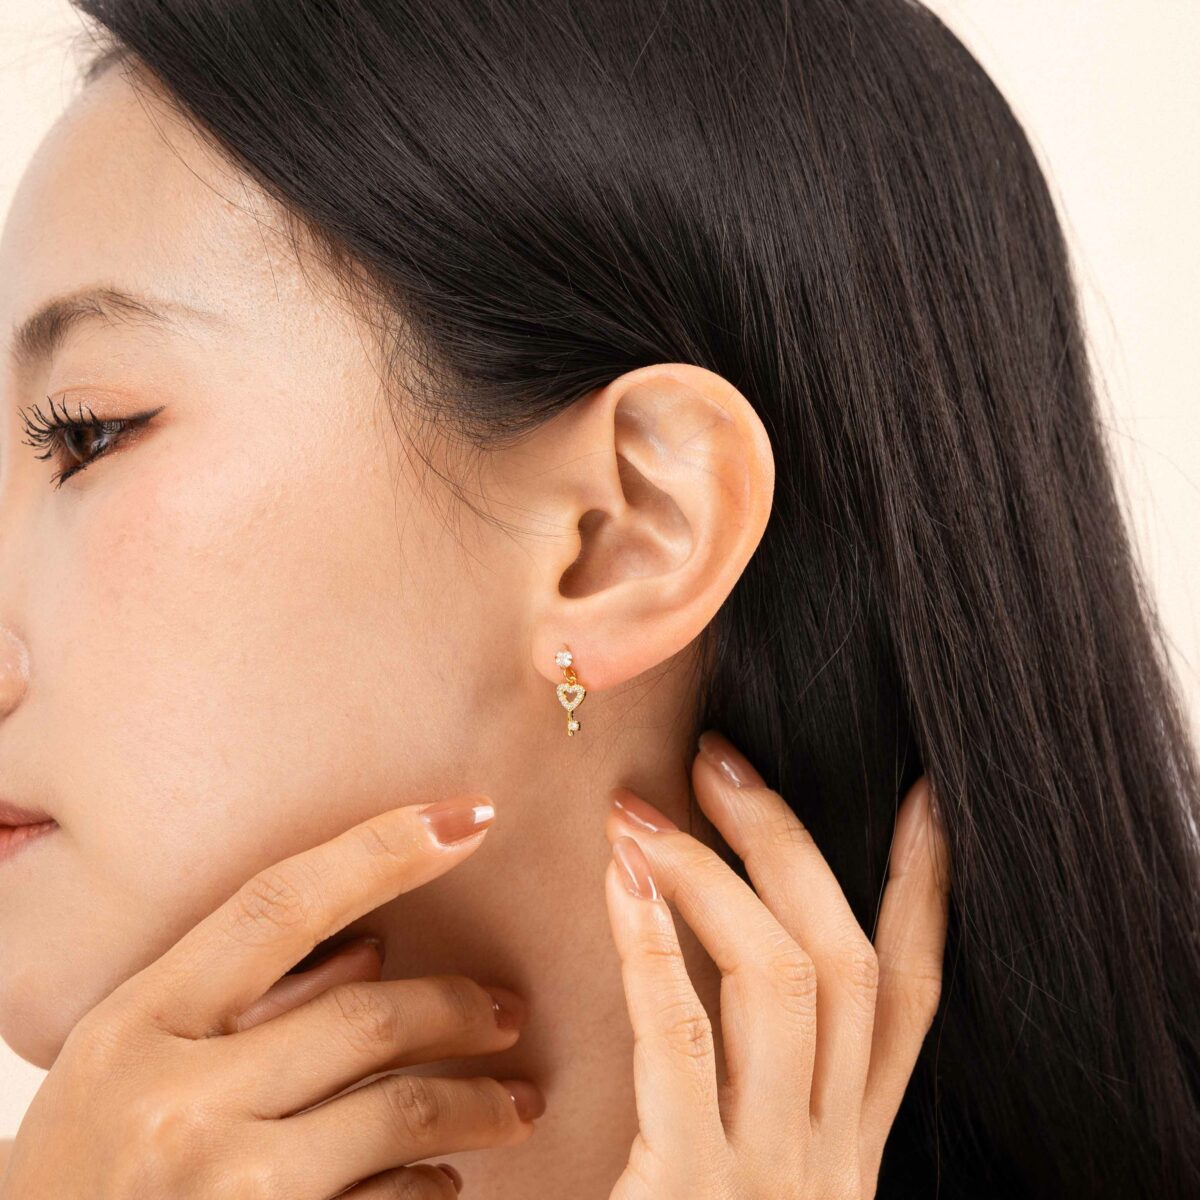 https://m.clubbella.co/product/alicia-earrings-24k-gold-plated/ HEART KEY EARRINGS (1)